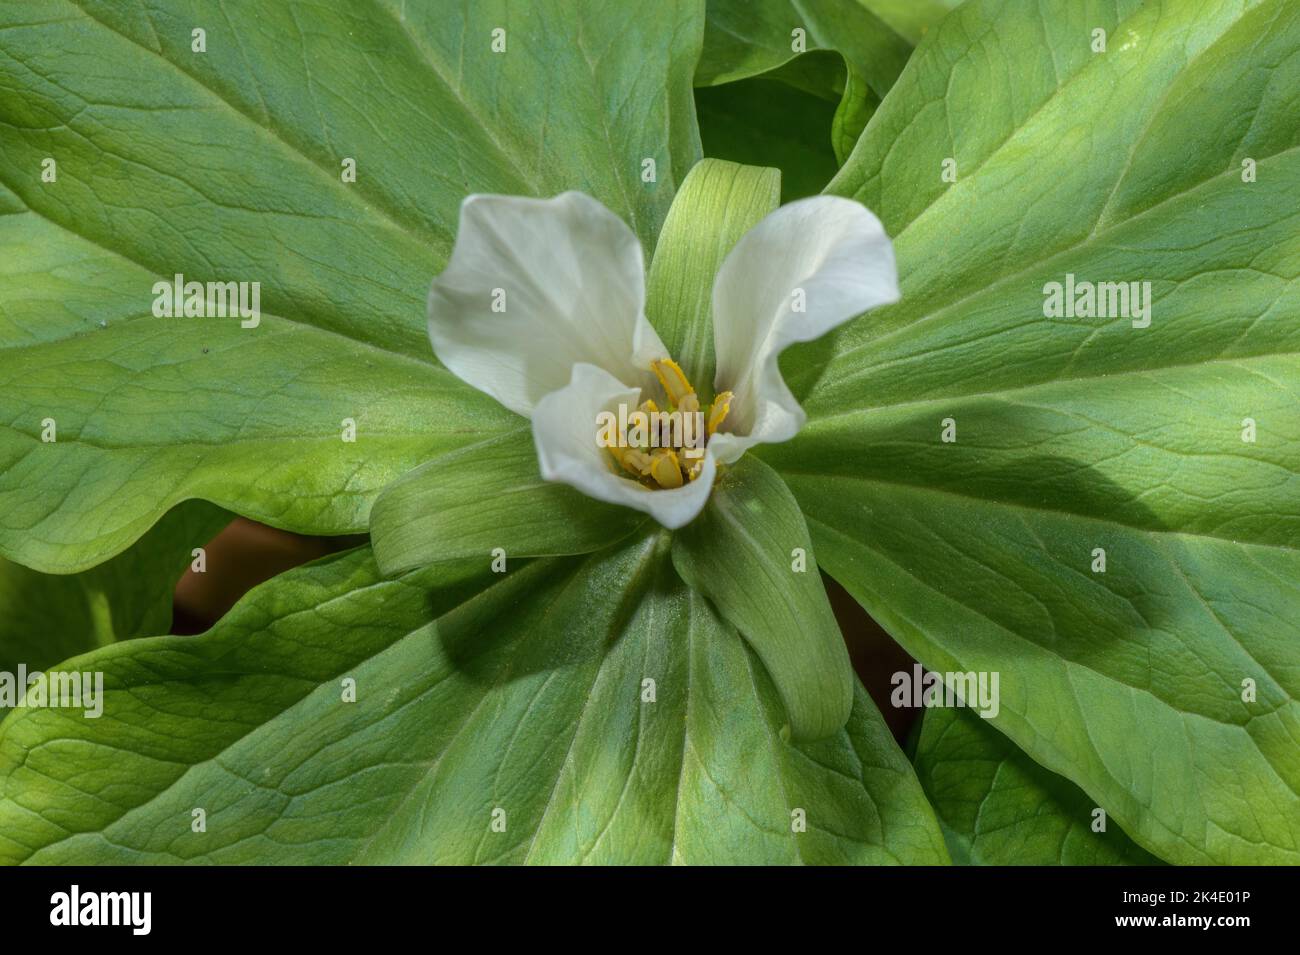 Rouge-gorge blanc géant, Trillium albidum en fleur. ÉTATS-UNIS. Banque D'Images